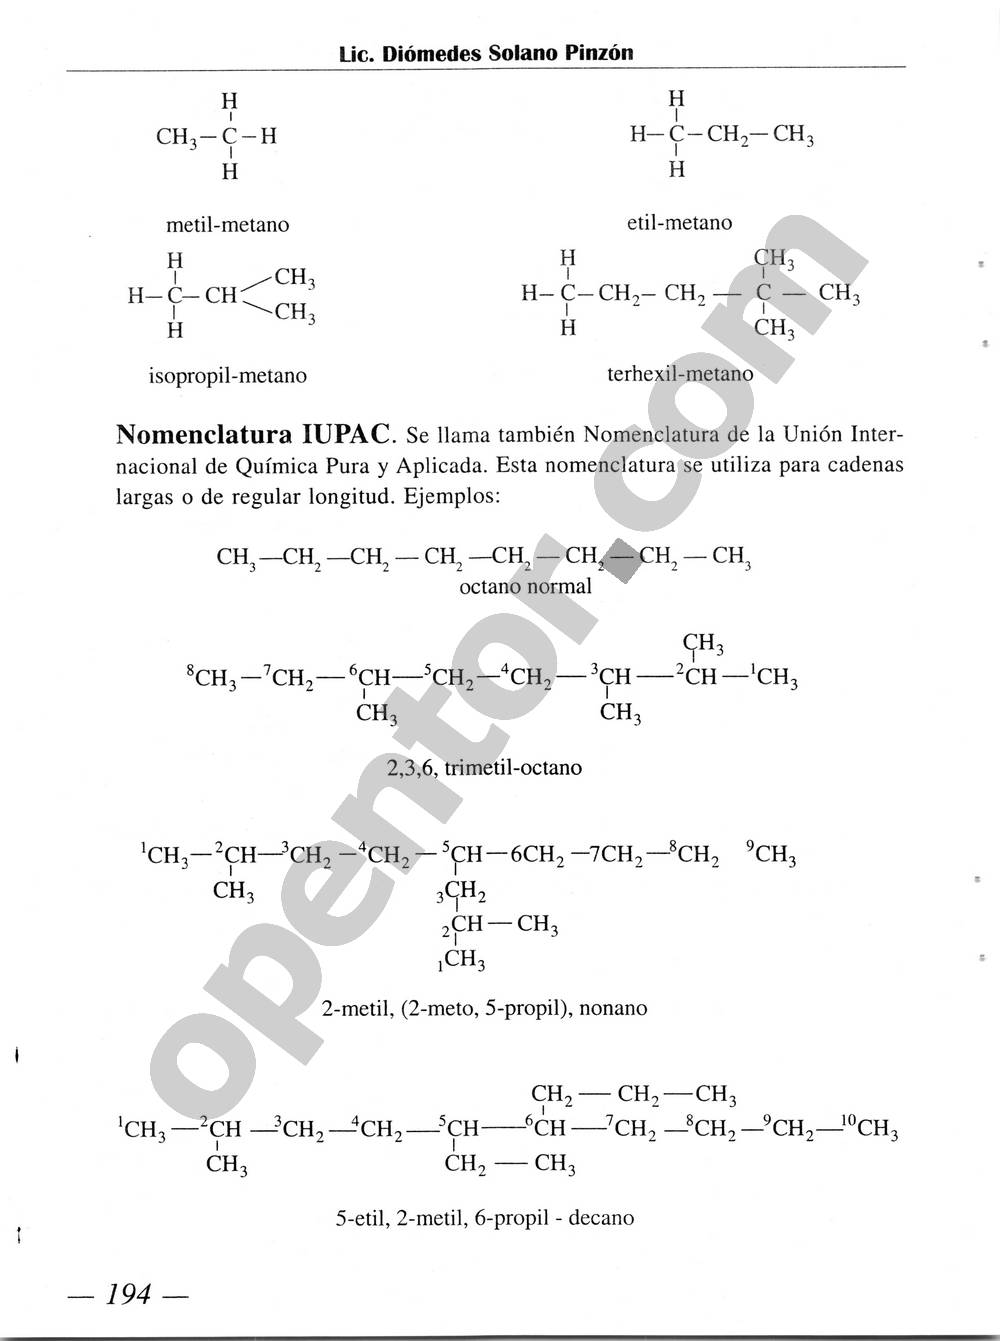 Química Simplificada de Diómedes Solano - Página 194